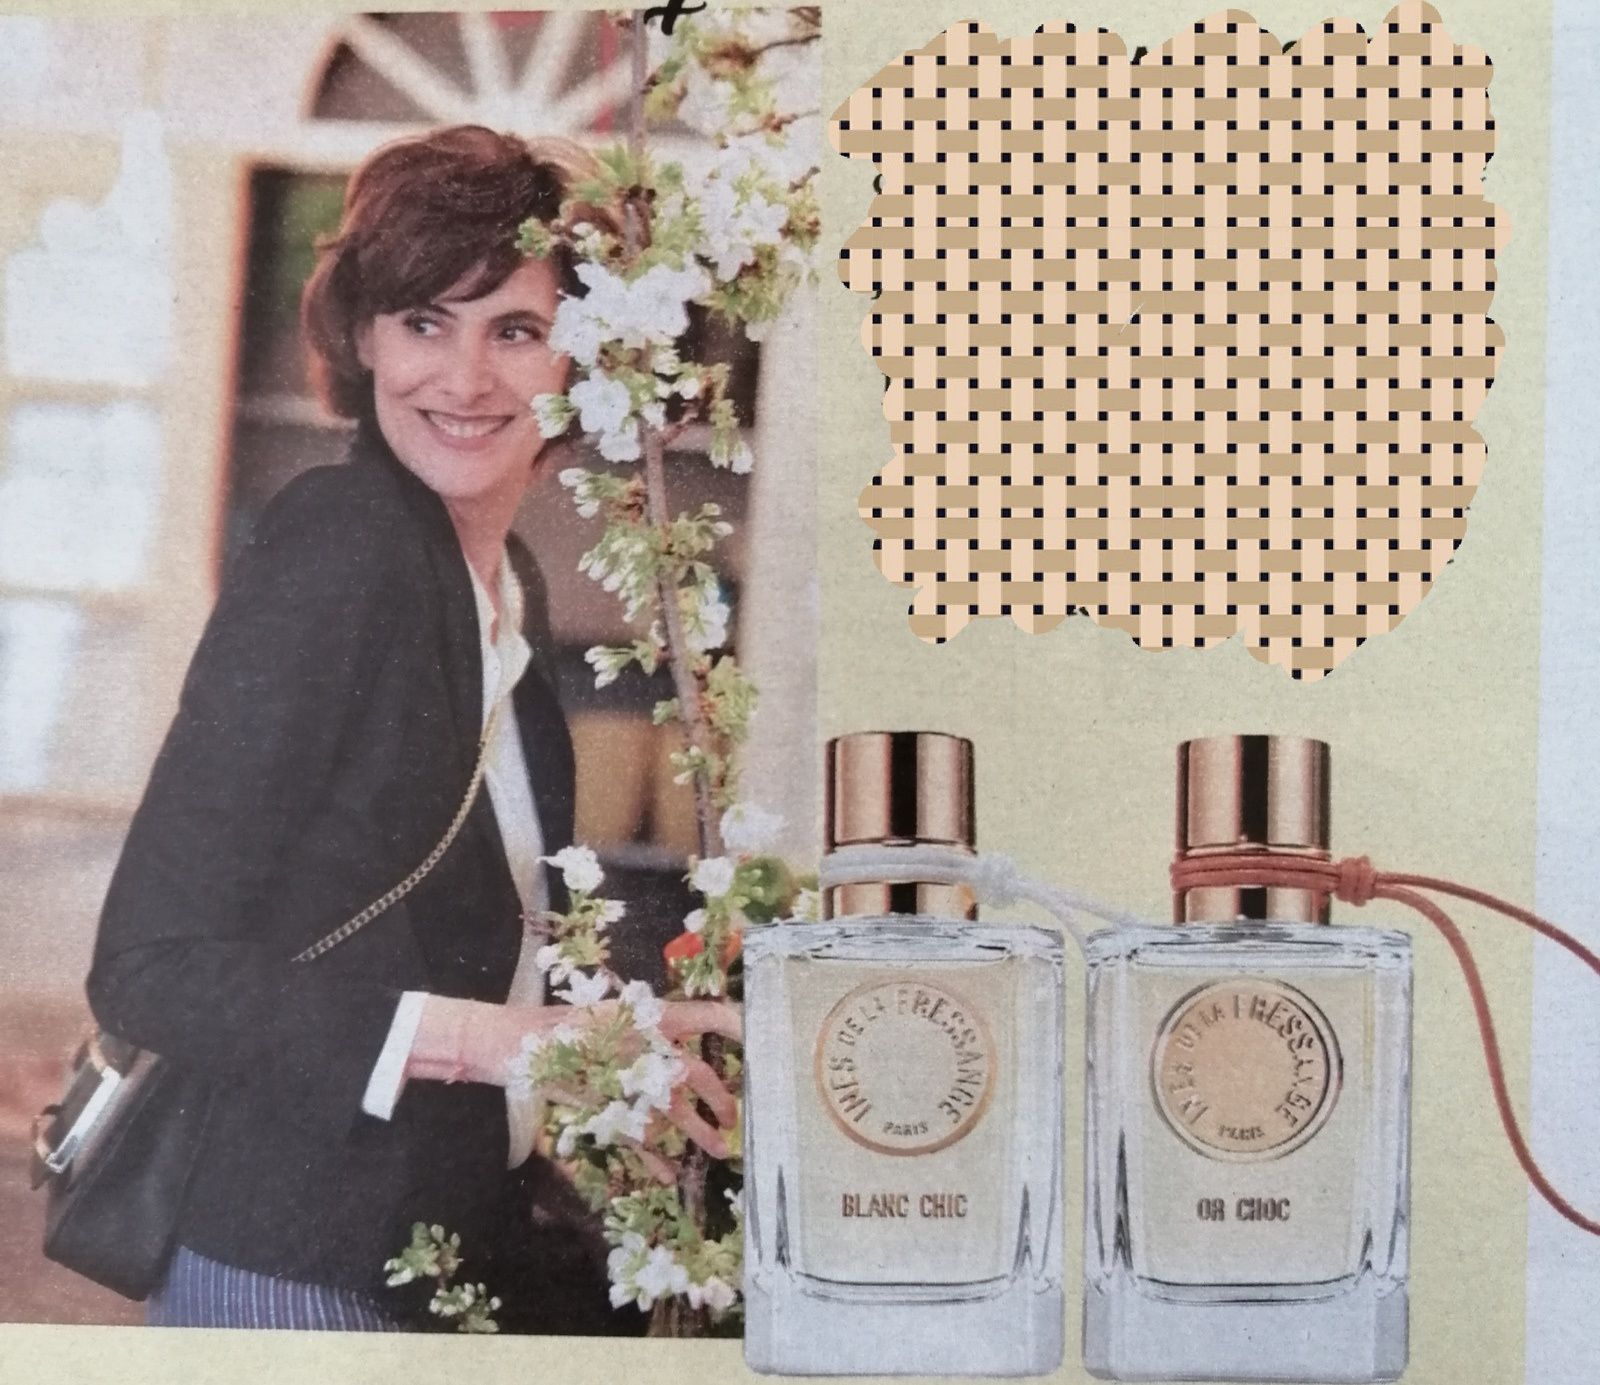 Blanc chic et Or choc d'Inès de la Fressange - 1001 envies de parfums